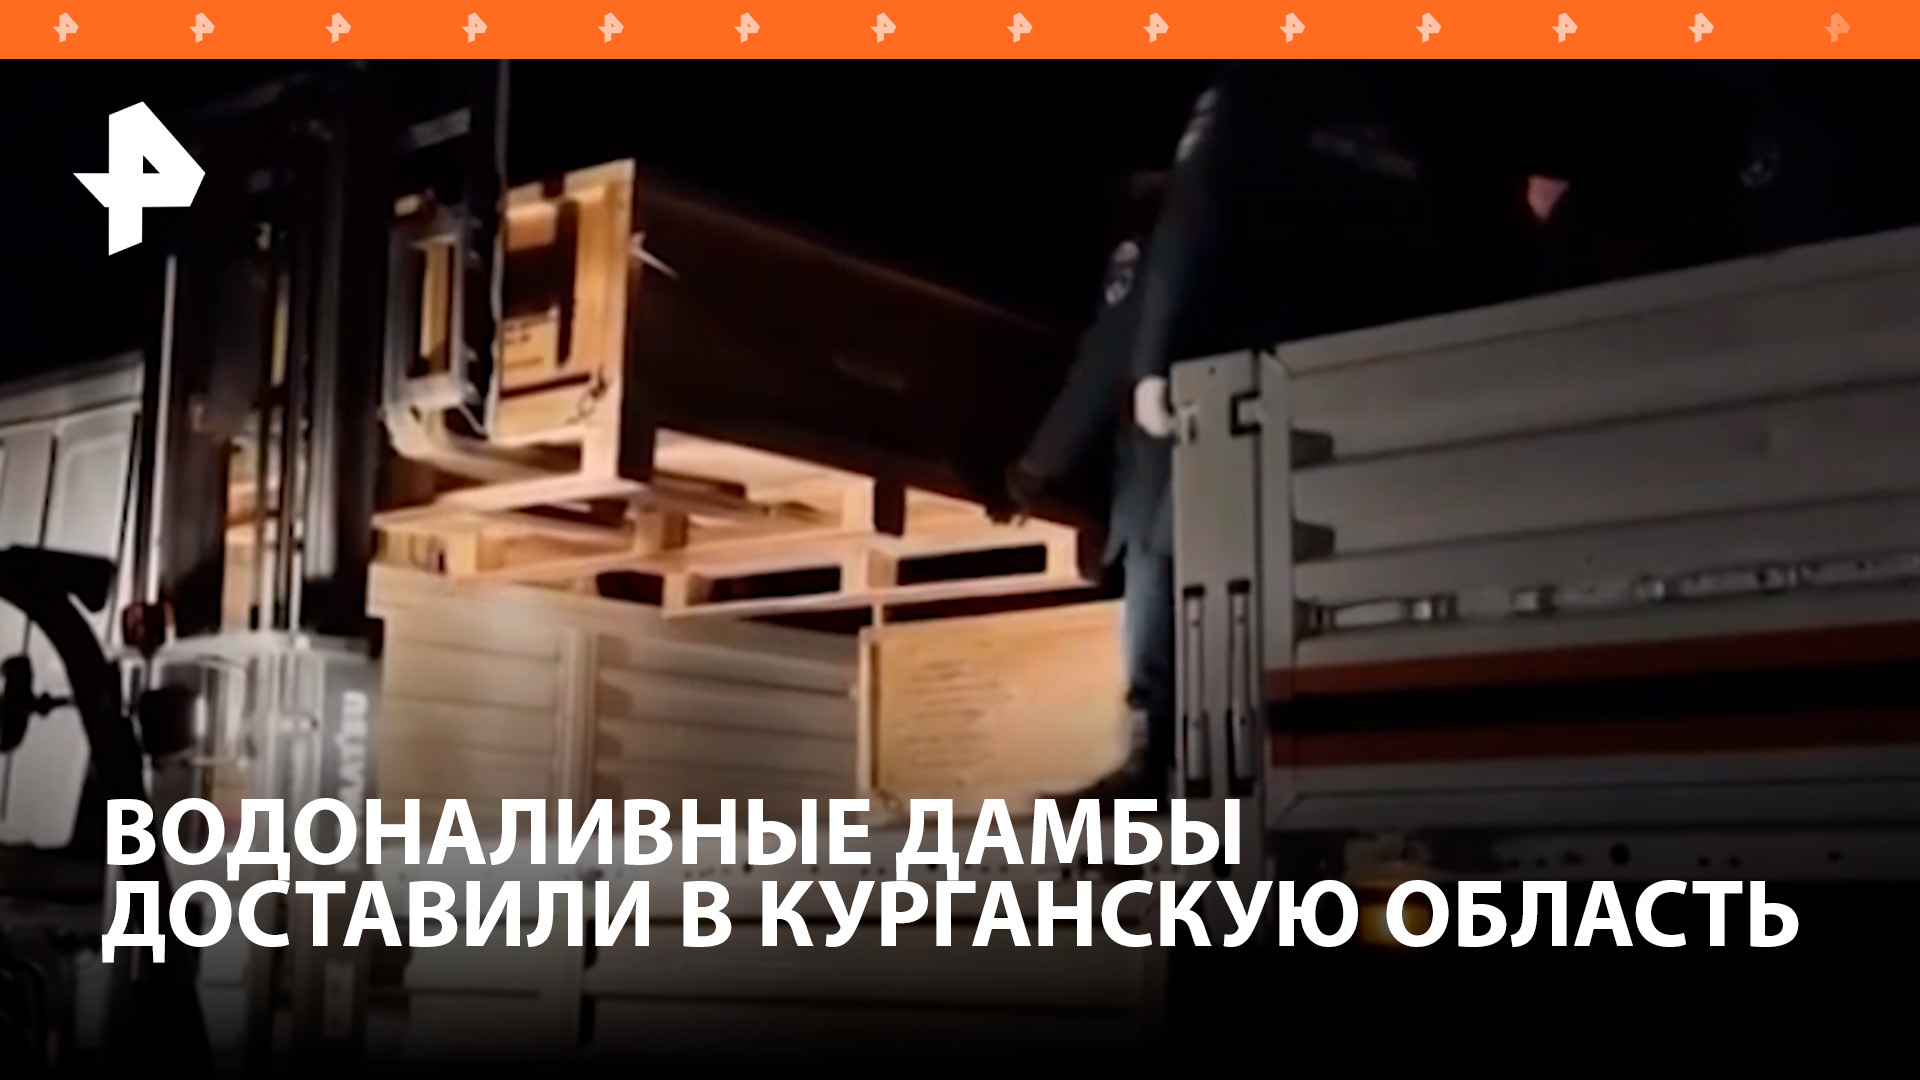 Спецборт МЧС доставил 20 водоналивных дамб в Курганскую область / РЕН Новости